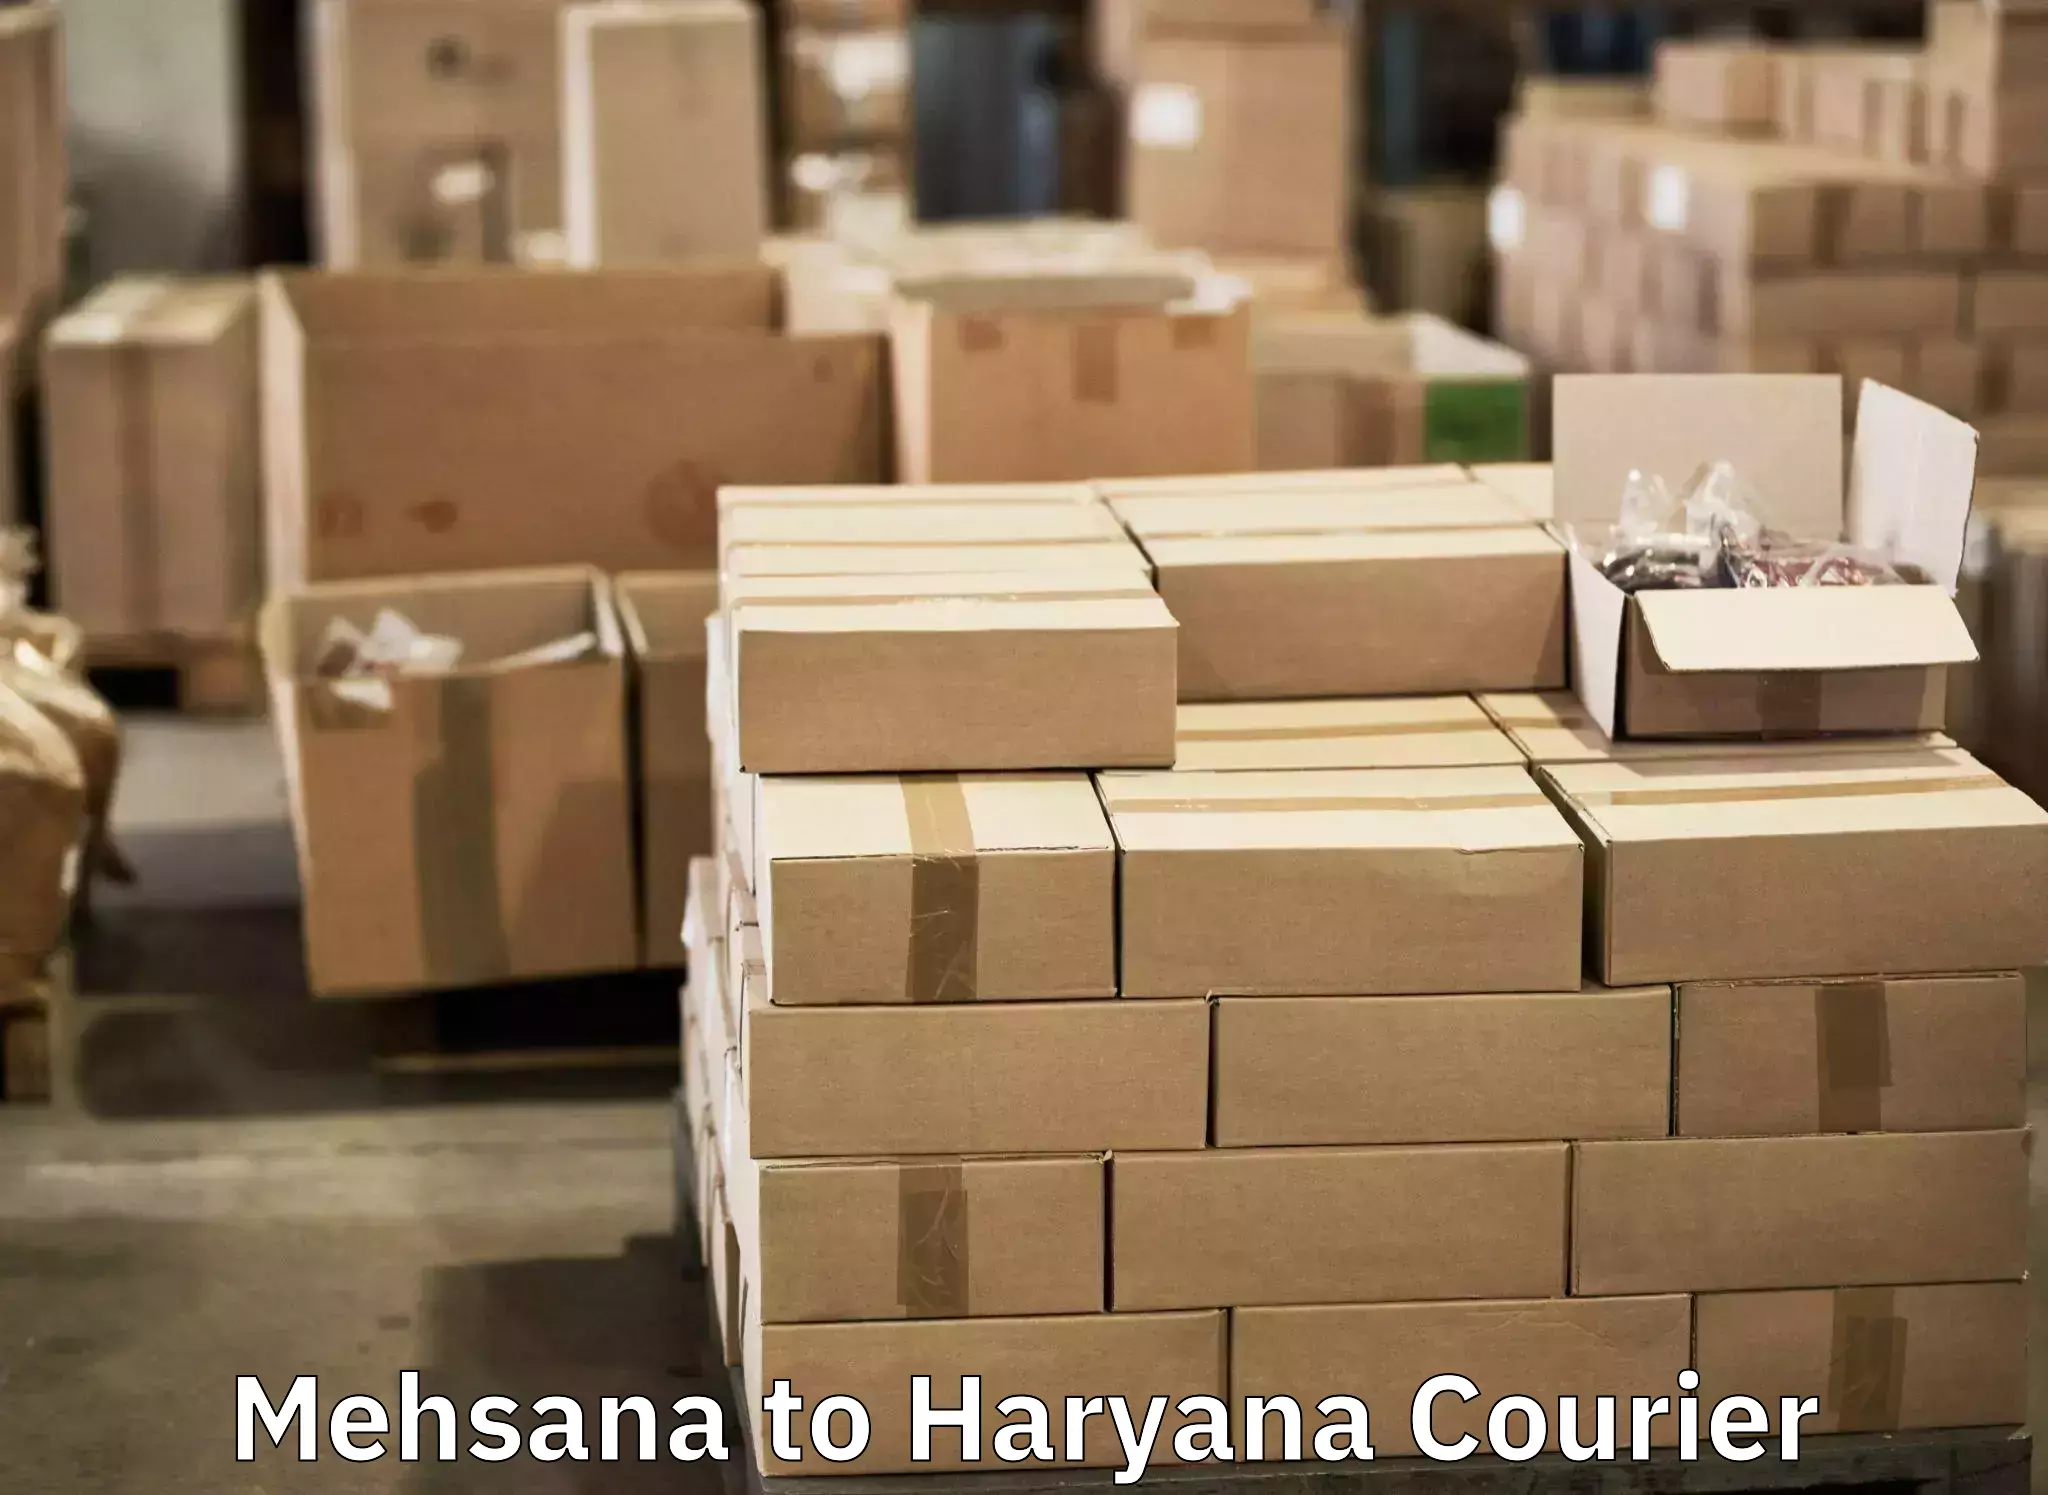 Luggage shipment tracking Mehsana to IIIT Sonepat